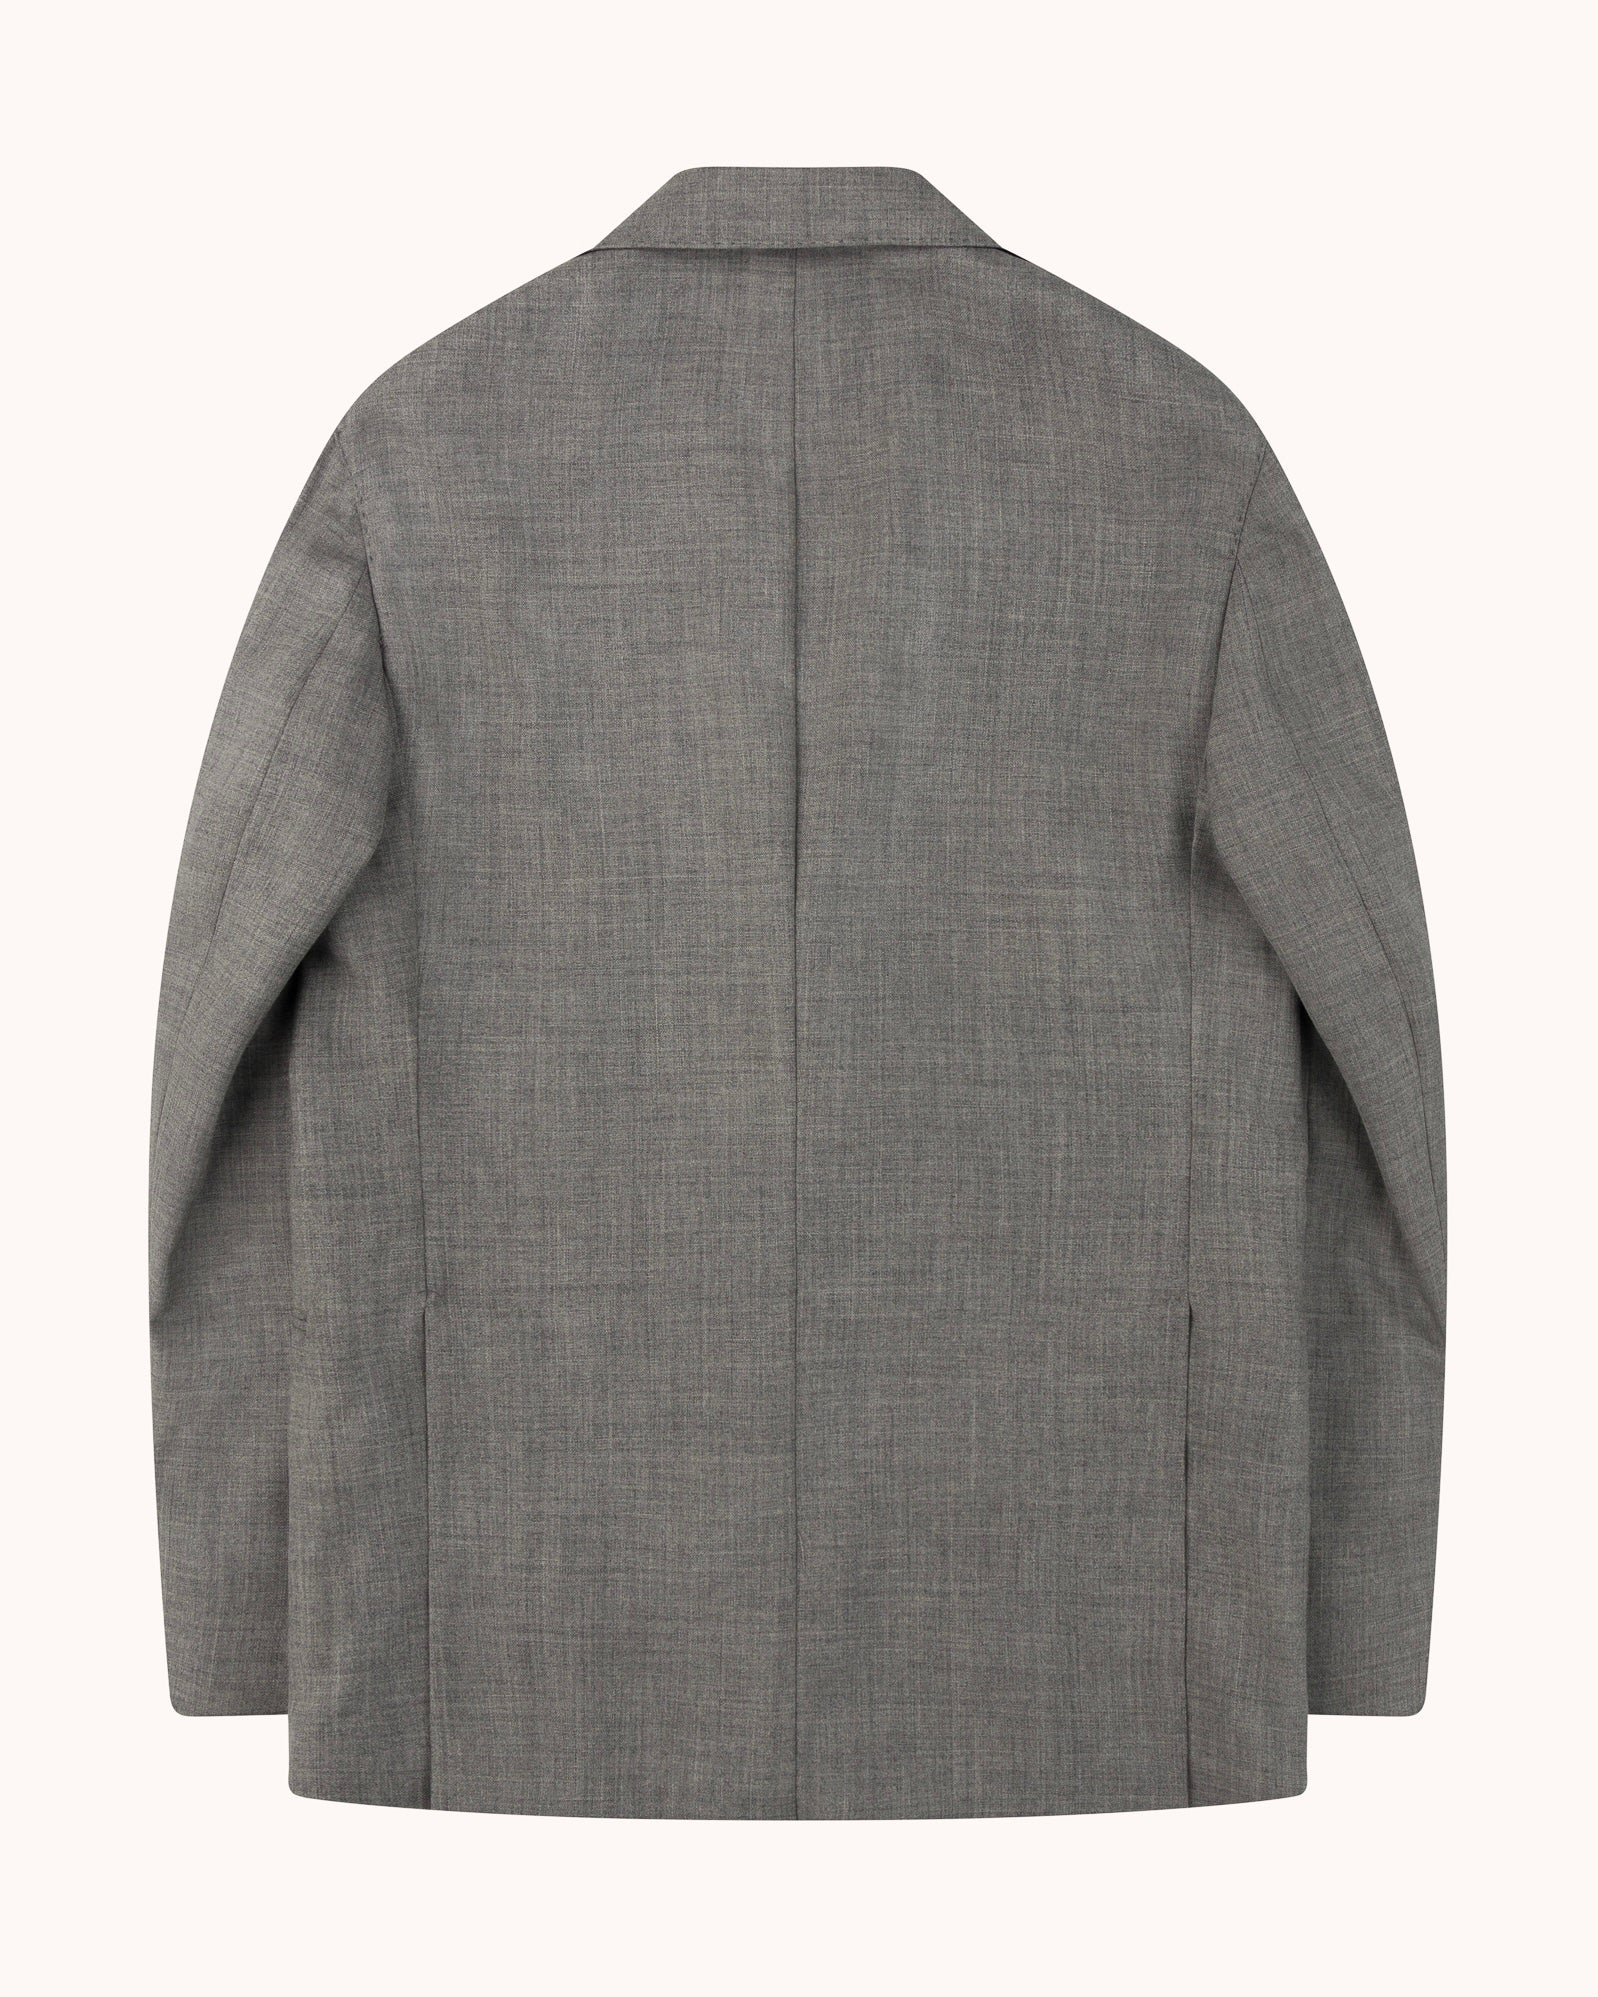 Sport Jacket - Pearl Grey Tropical Wool